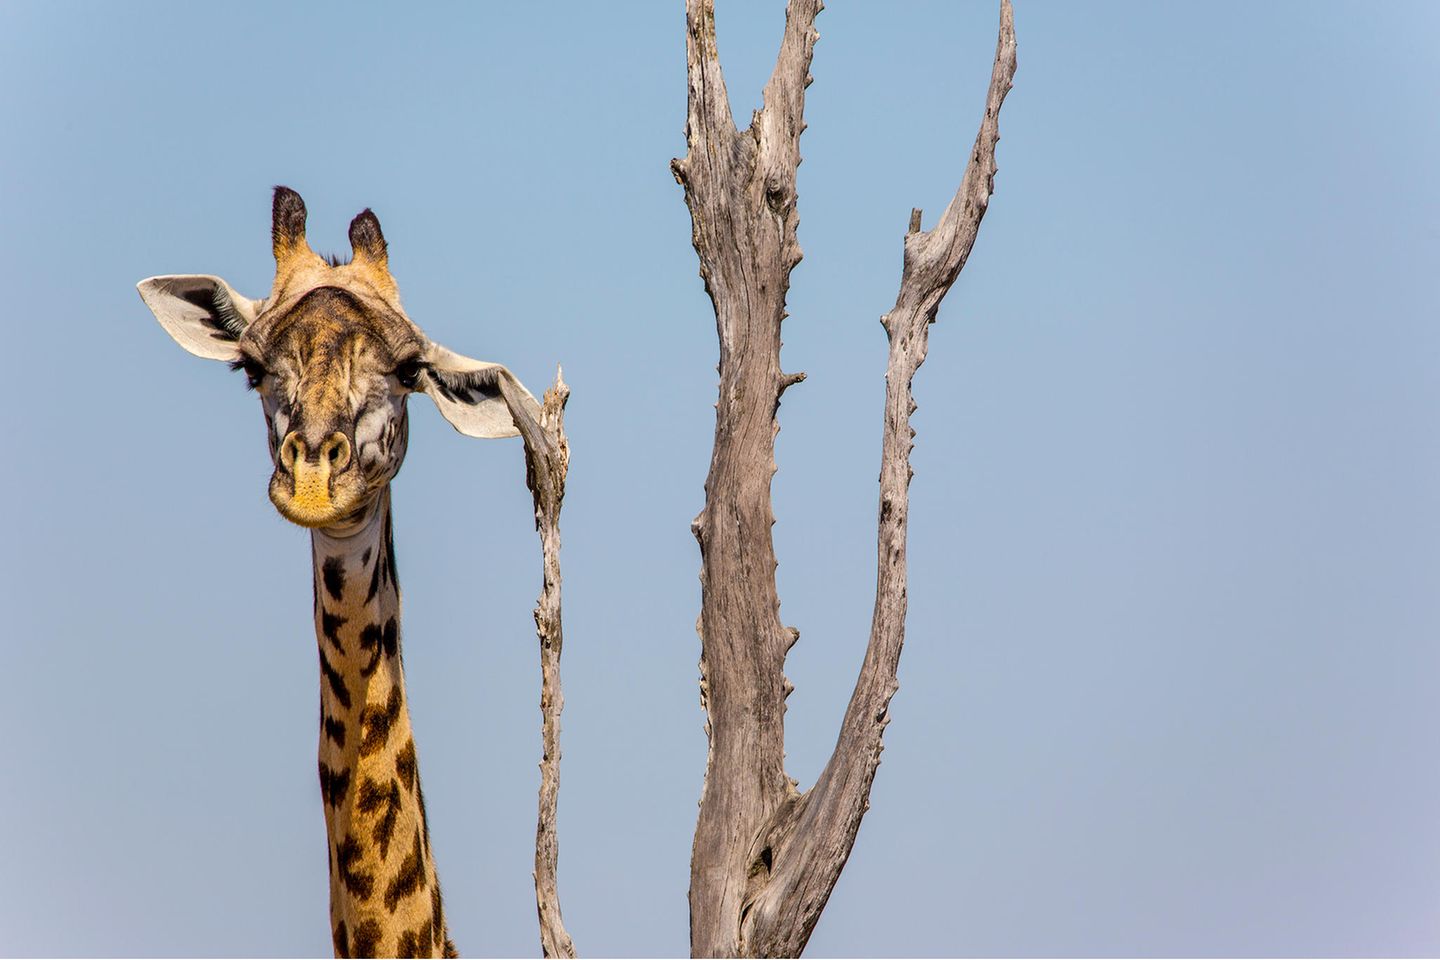 Wenns am Ohr juckt, muss Giraffe erst mal das passende Kratz-Objekt finden. Shelly Perkins konnte diesen Moment mit der Kamera festhalten.